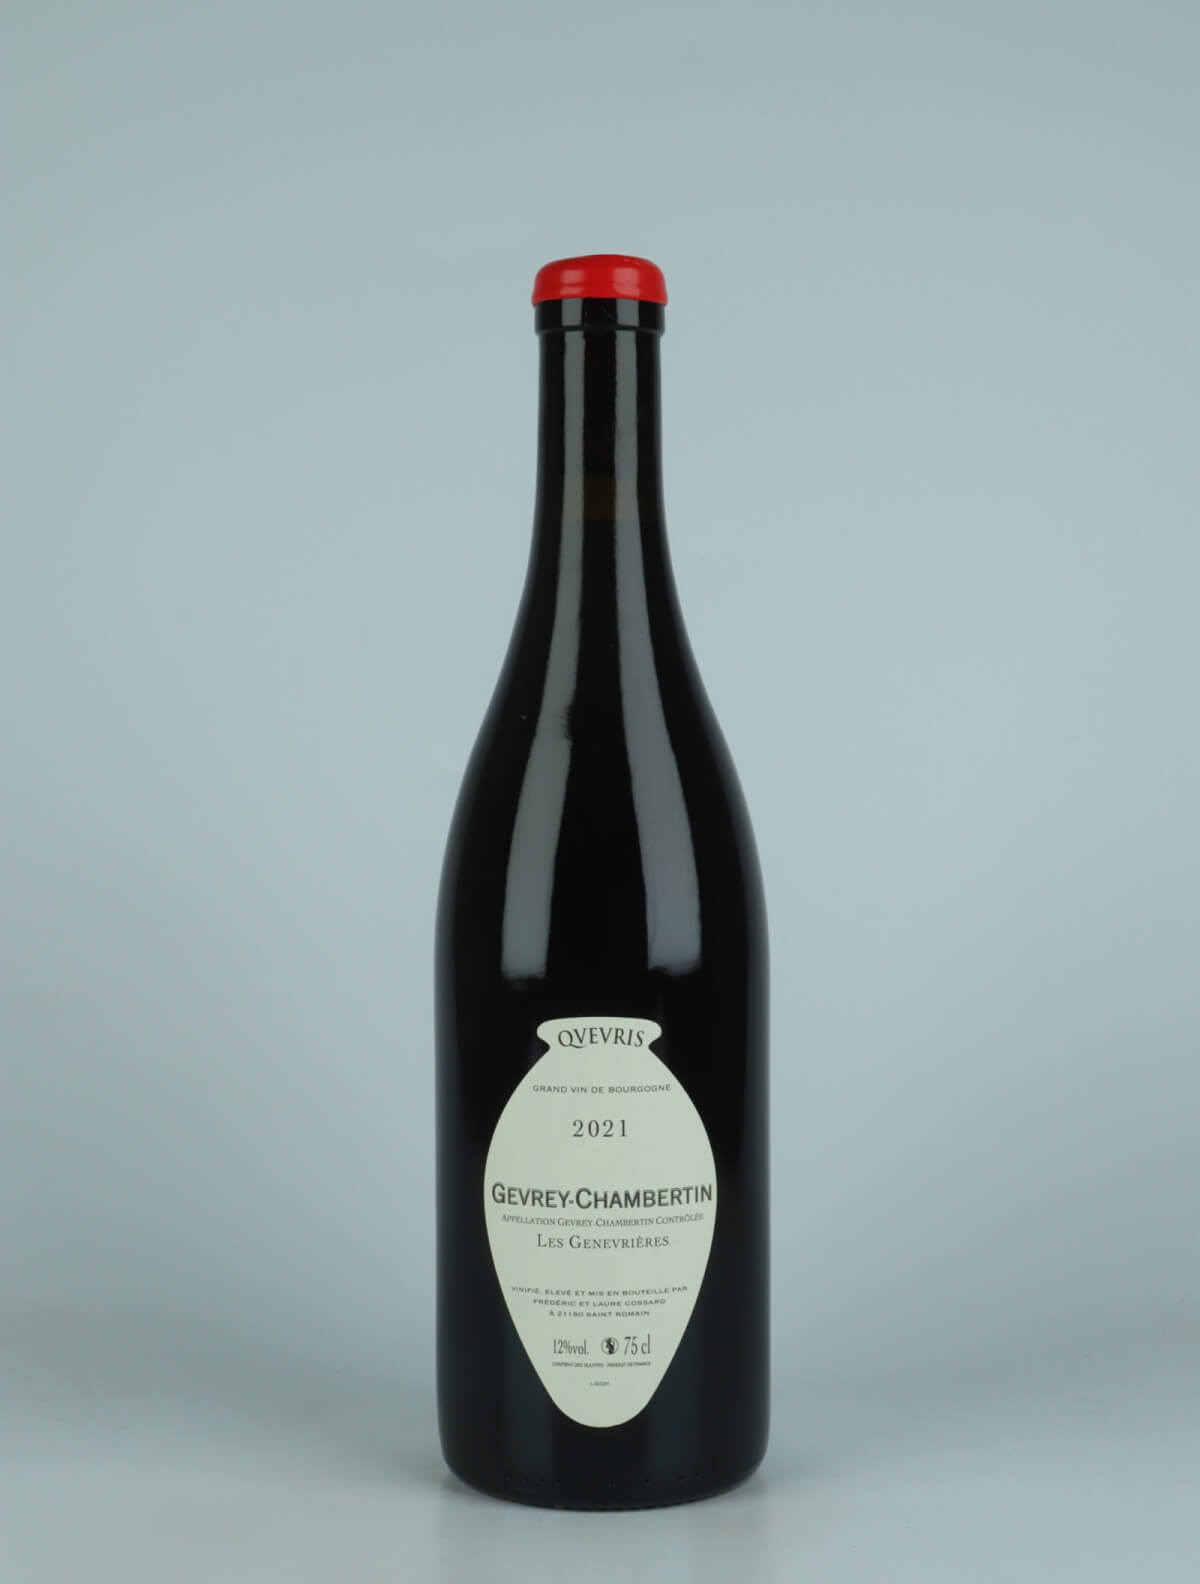 En flaske 2021 Gevrey Chambertin - Les Genevrières - Qvevris Rødvin fra Frédéric Cossard, Bourgogne i Frankrig